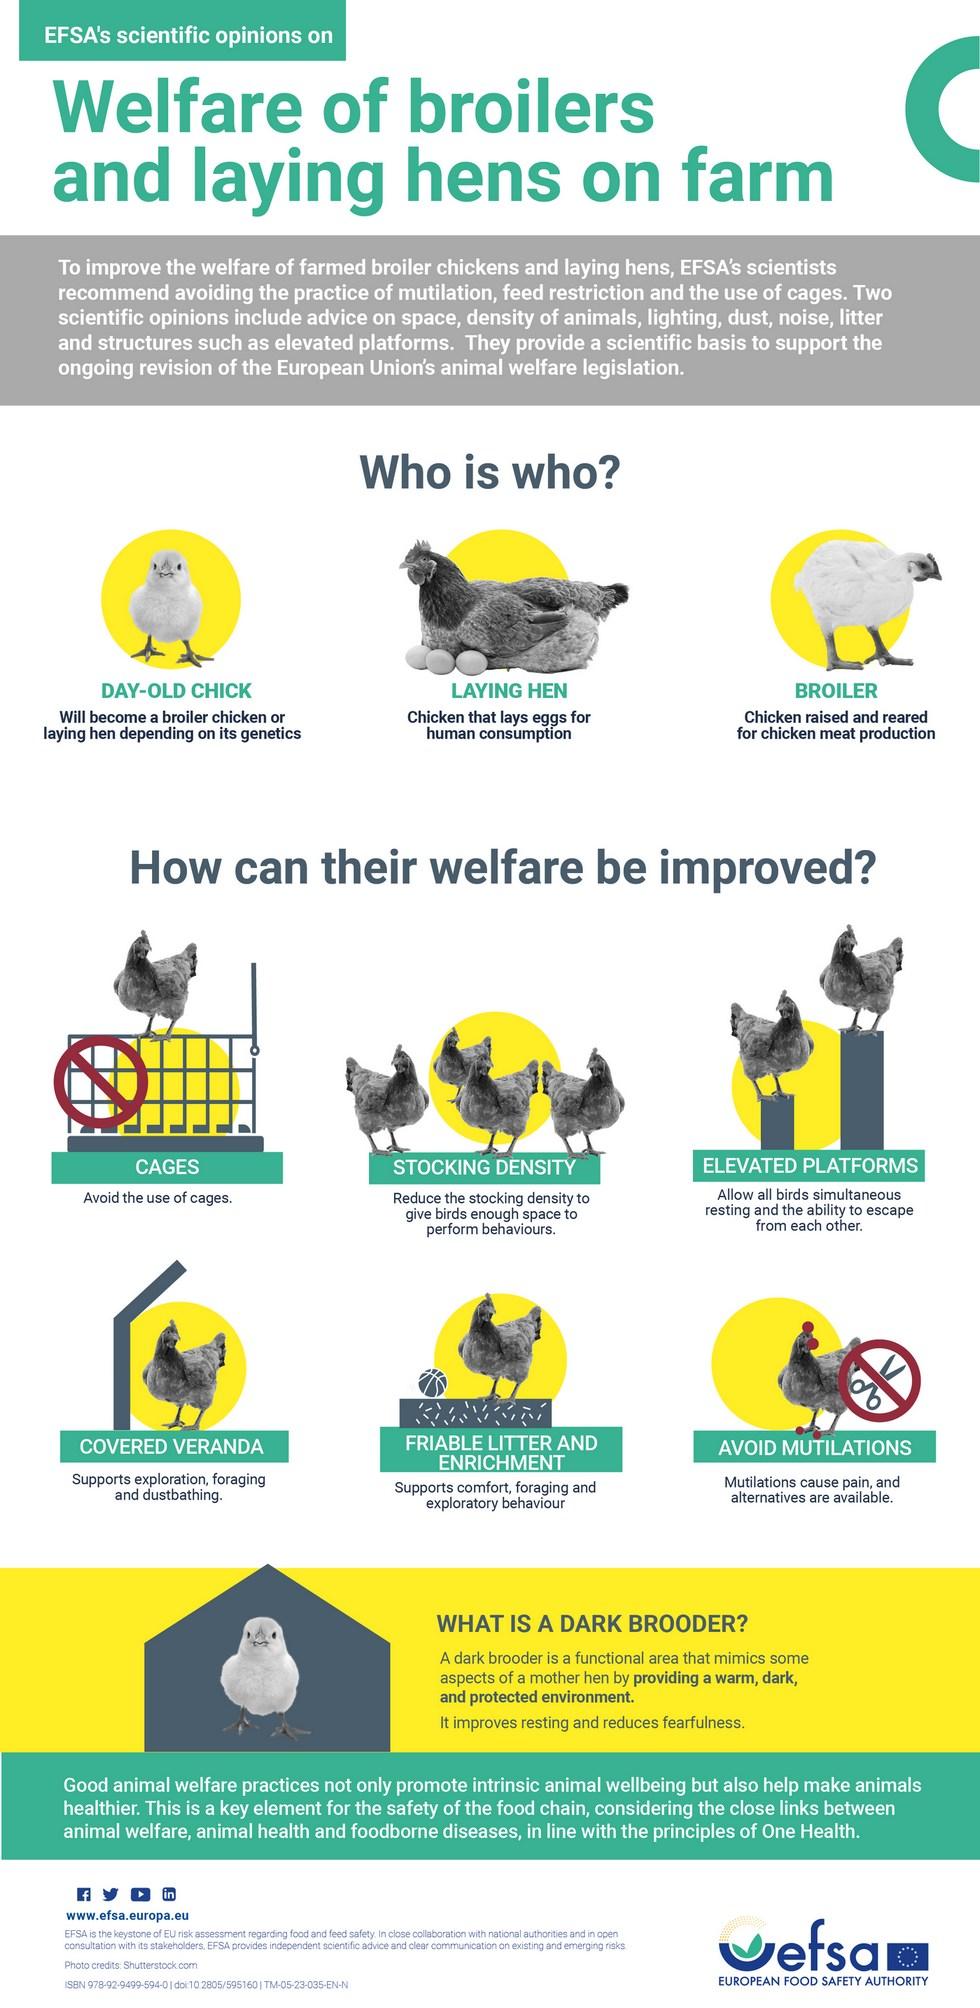 Unión Europea - EFSA: Alternativas para mejorar el bienestar de pollos gallinas - Image 1